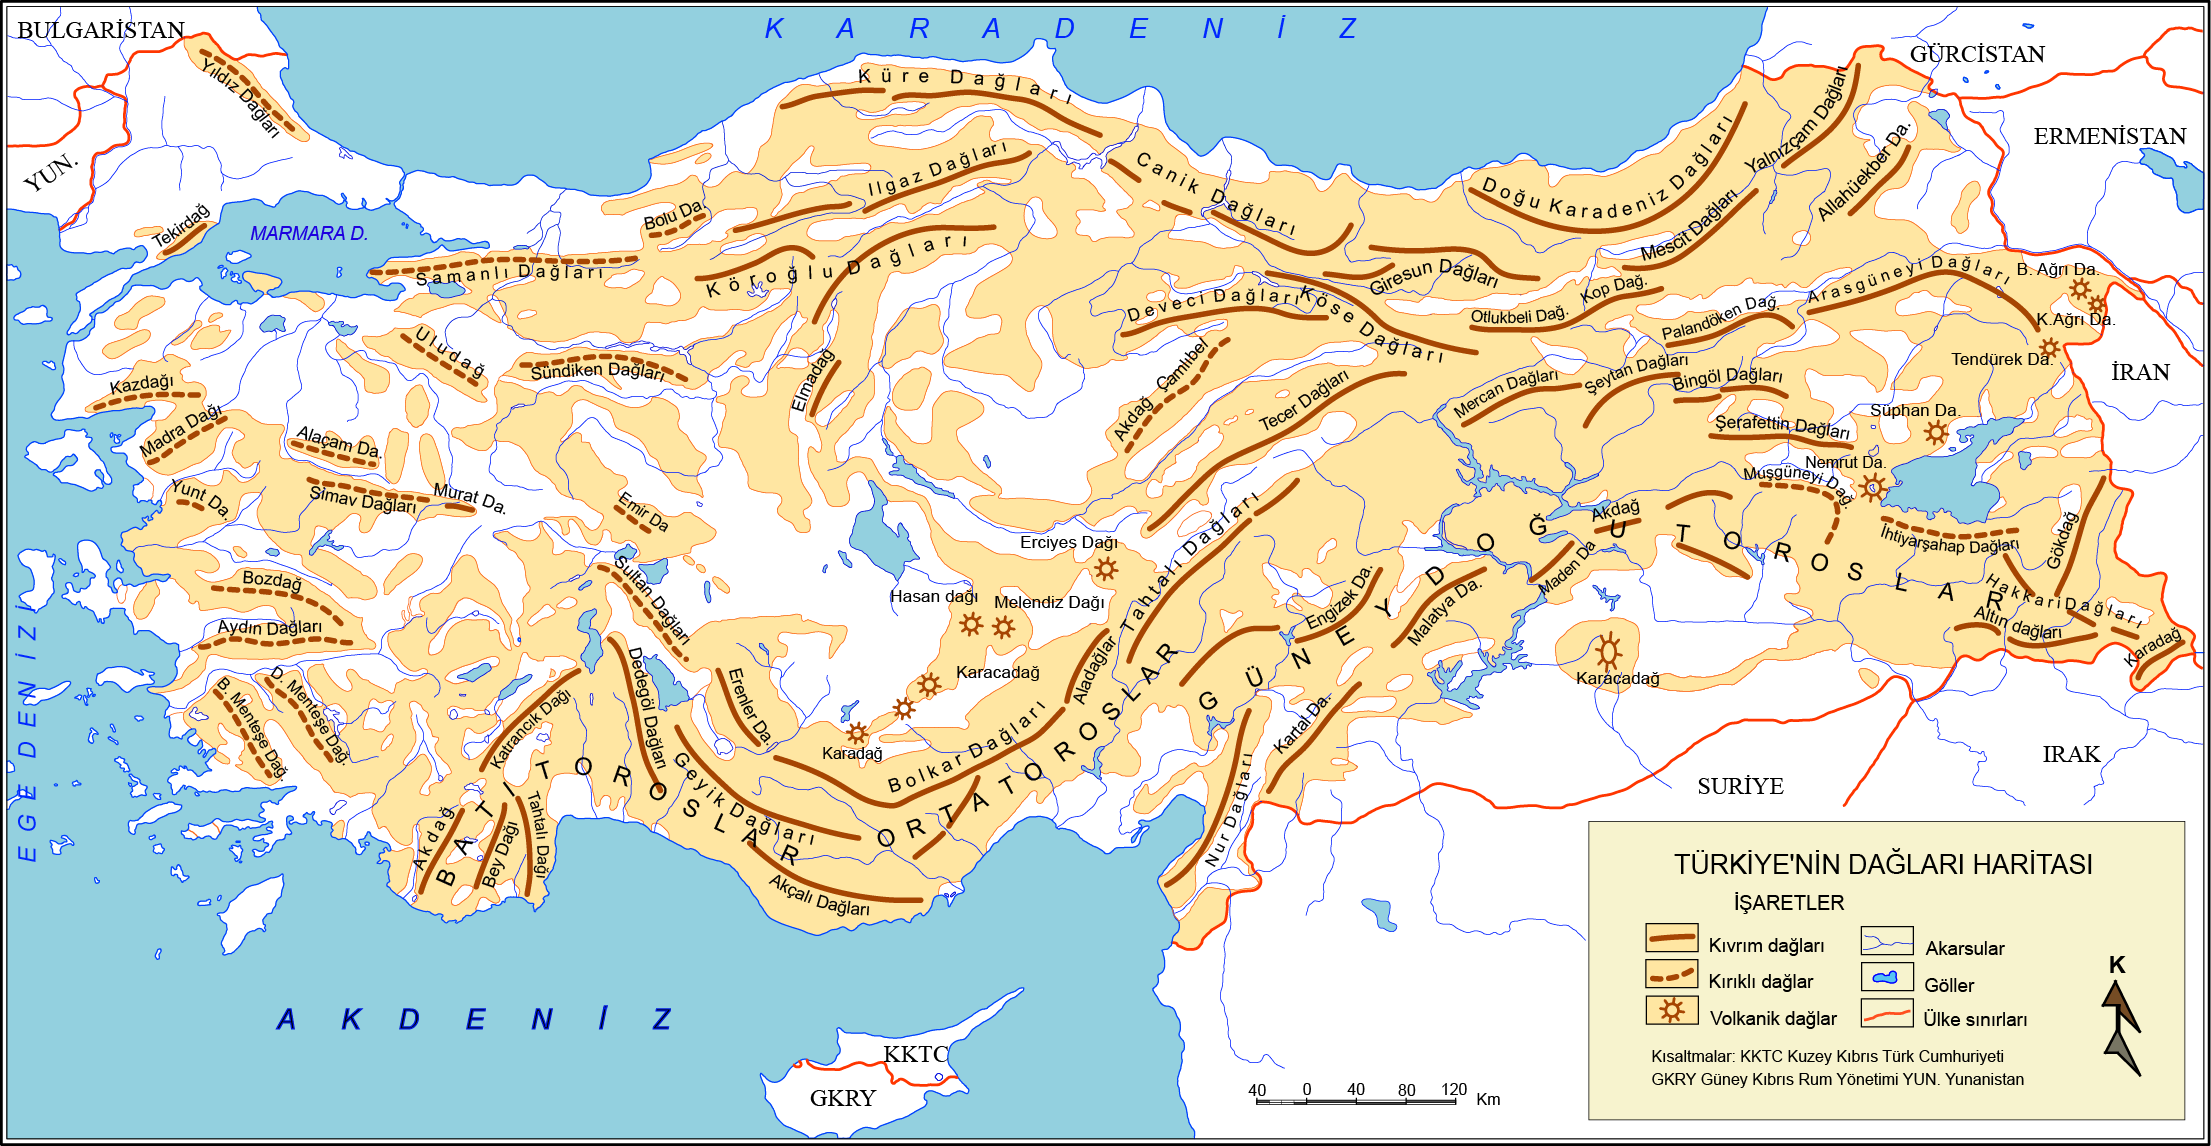 Türkiye'nin Dağları haritası